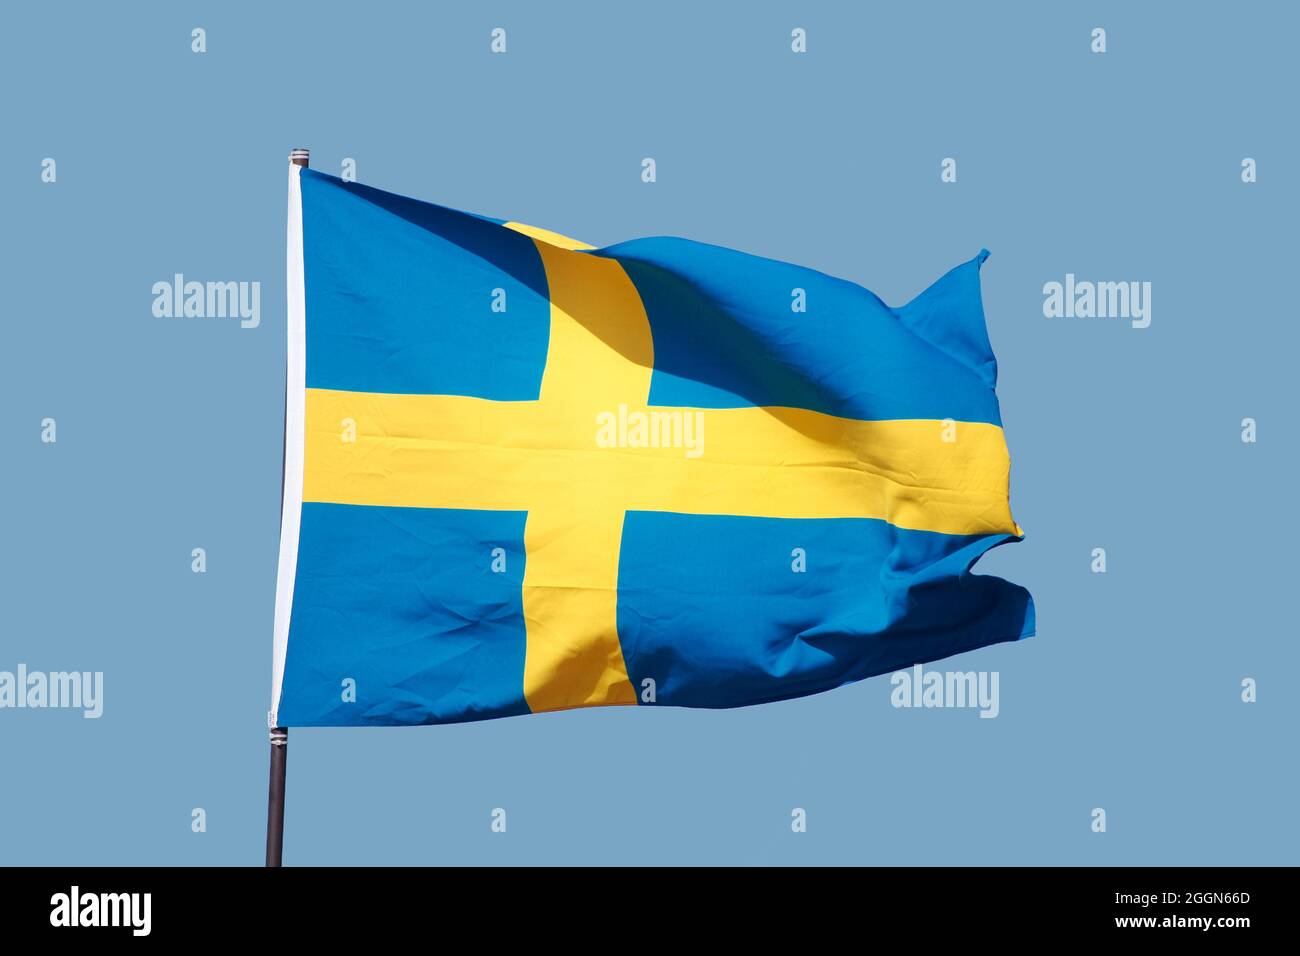 Swedish flag flying on flagpole on blue sky background Stock Photo